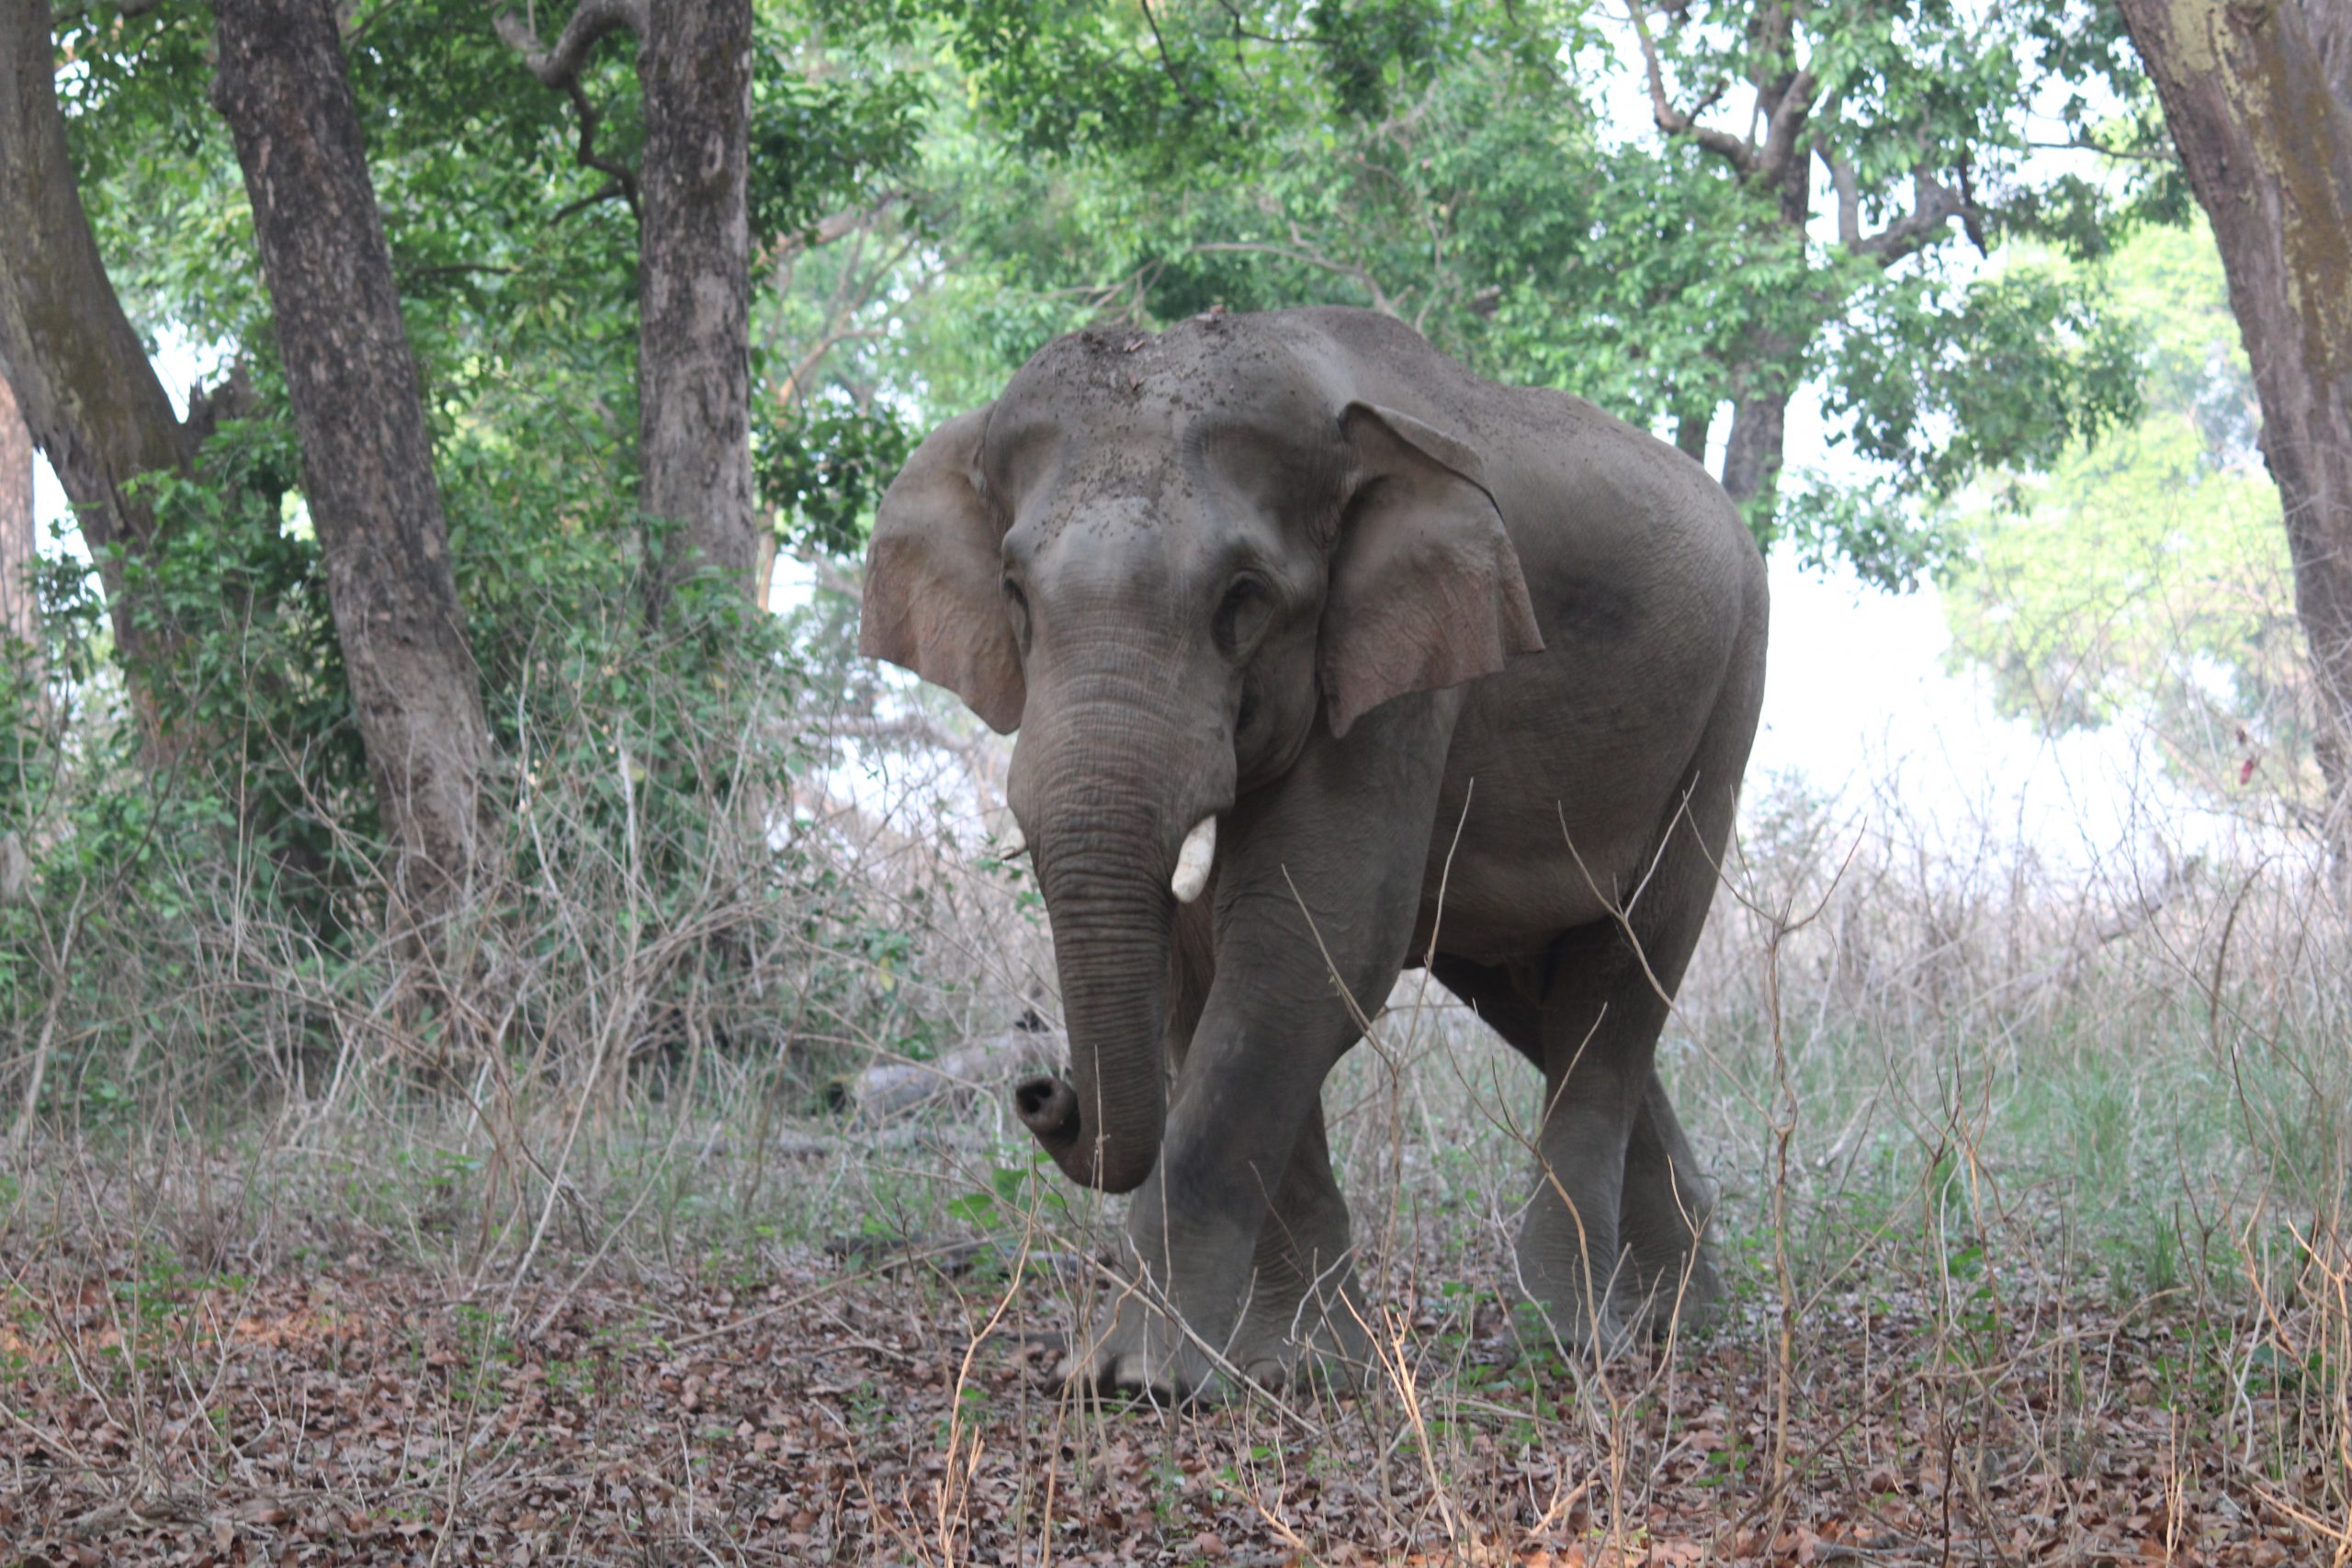 Image 8 (Charging Elephant)